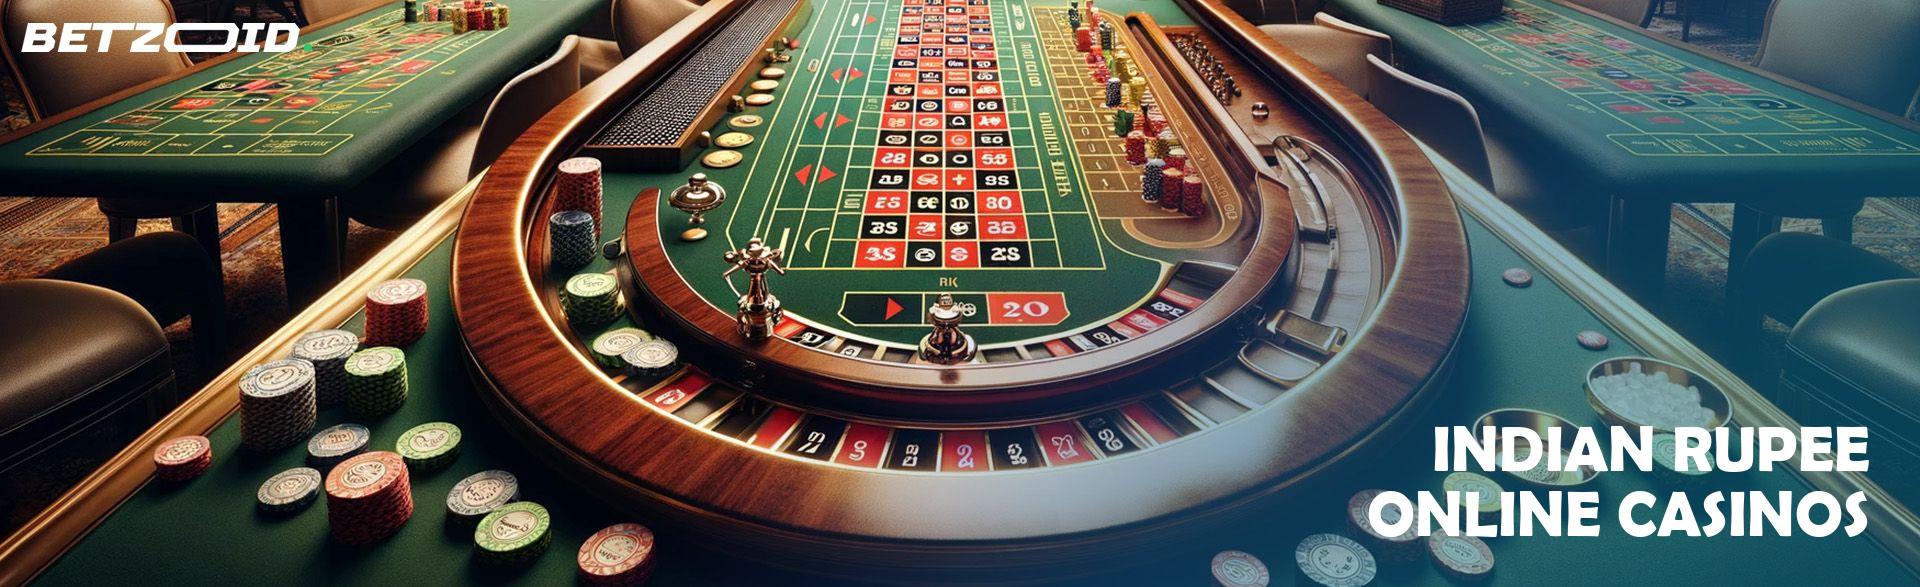 Indian Rupee Online Casinos.